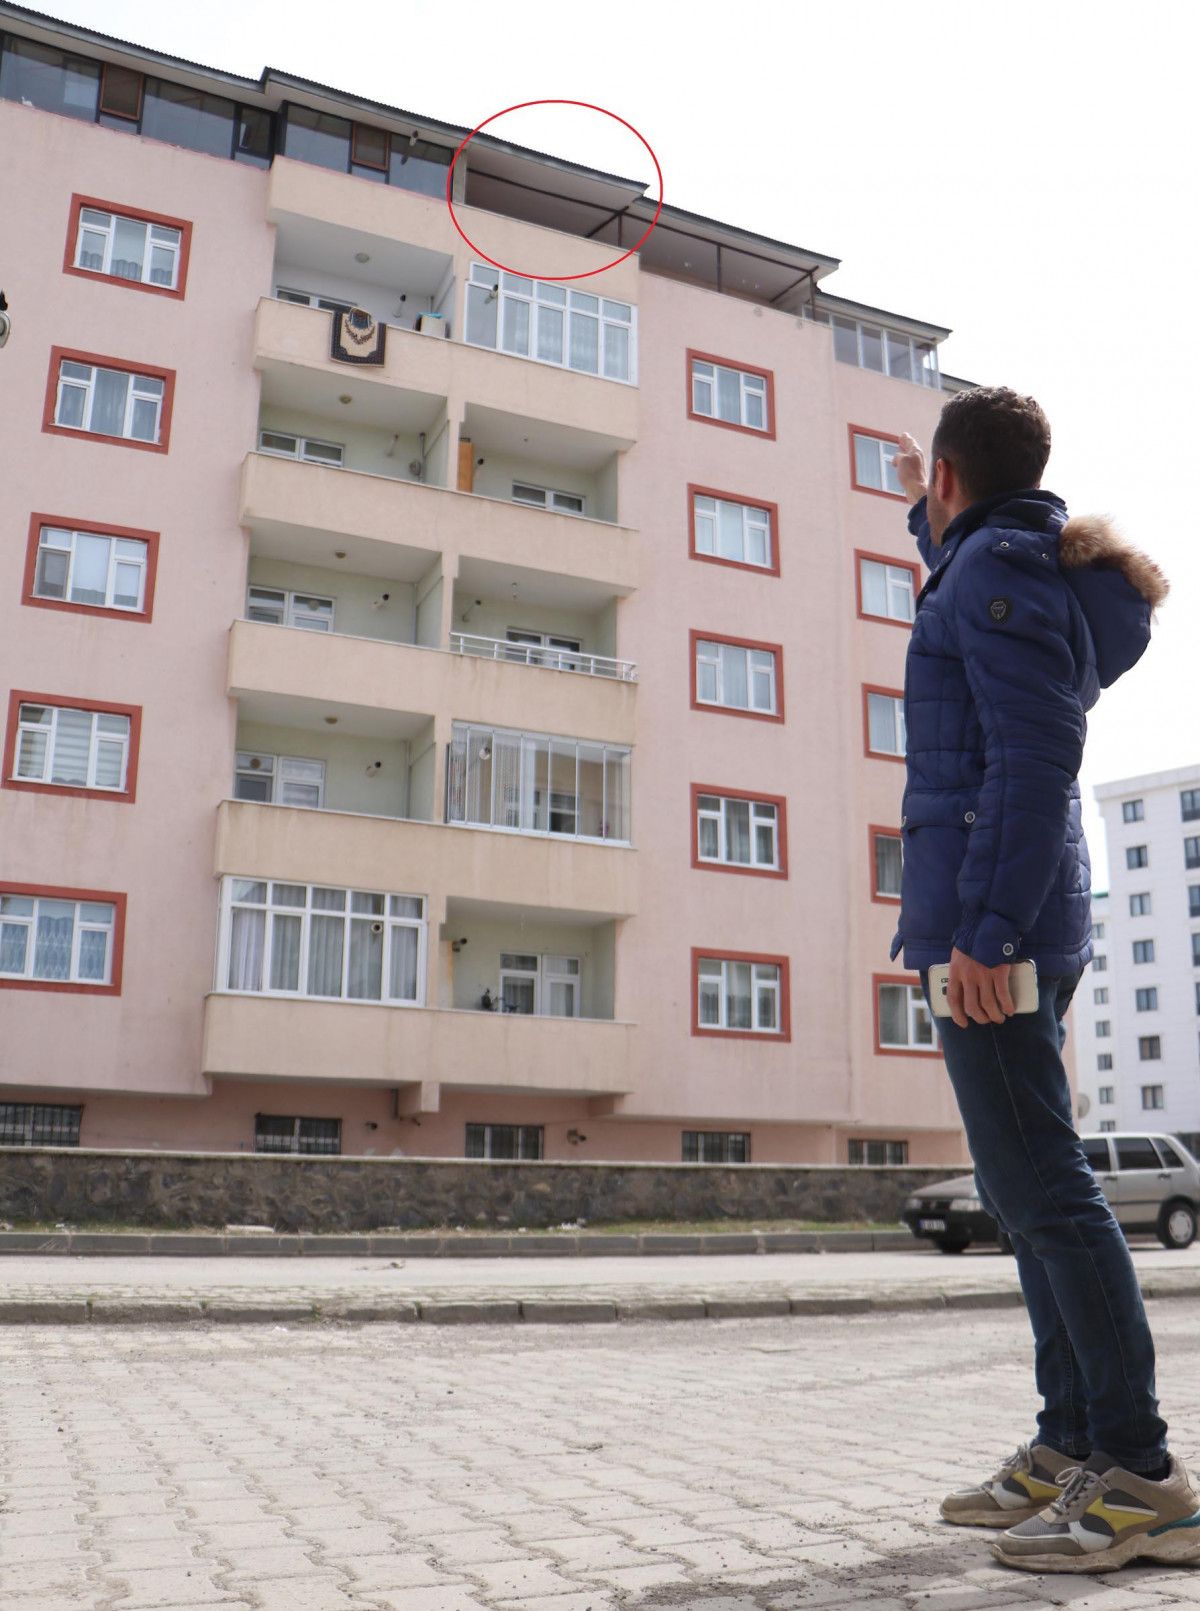 Erzurum daki kız çocuğu, çatıdan arkadaşlarını izlerken düştü #2